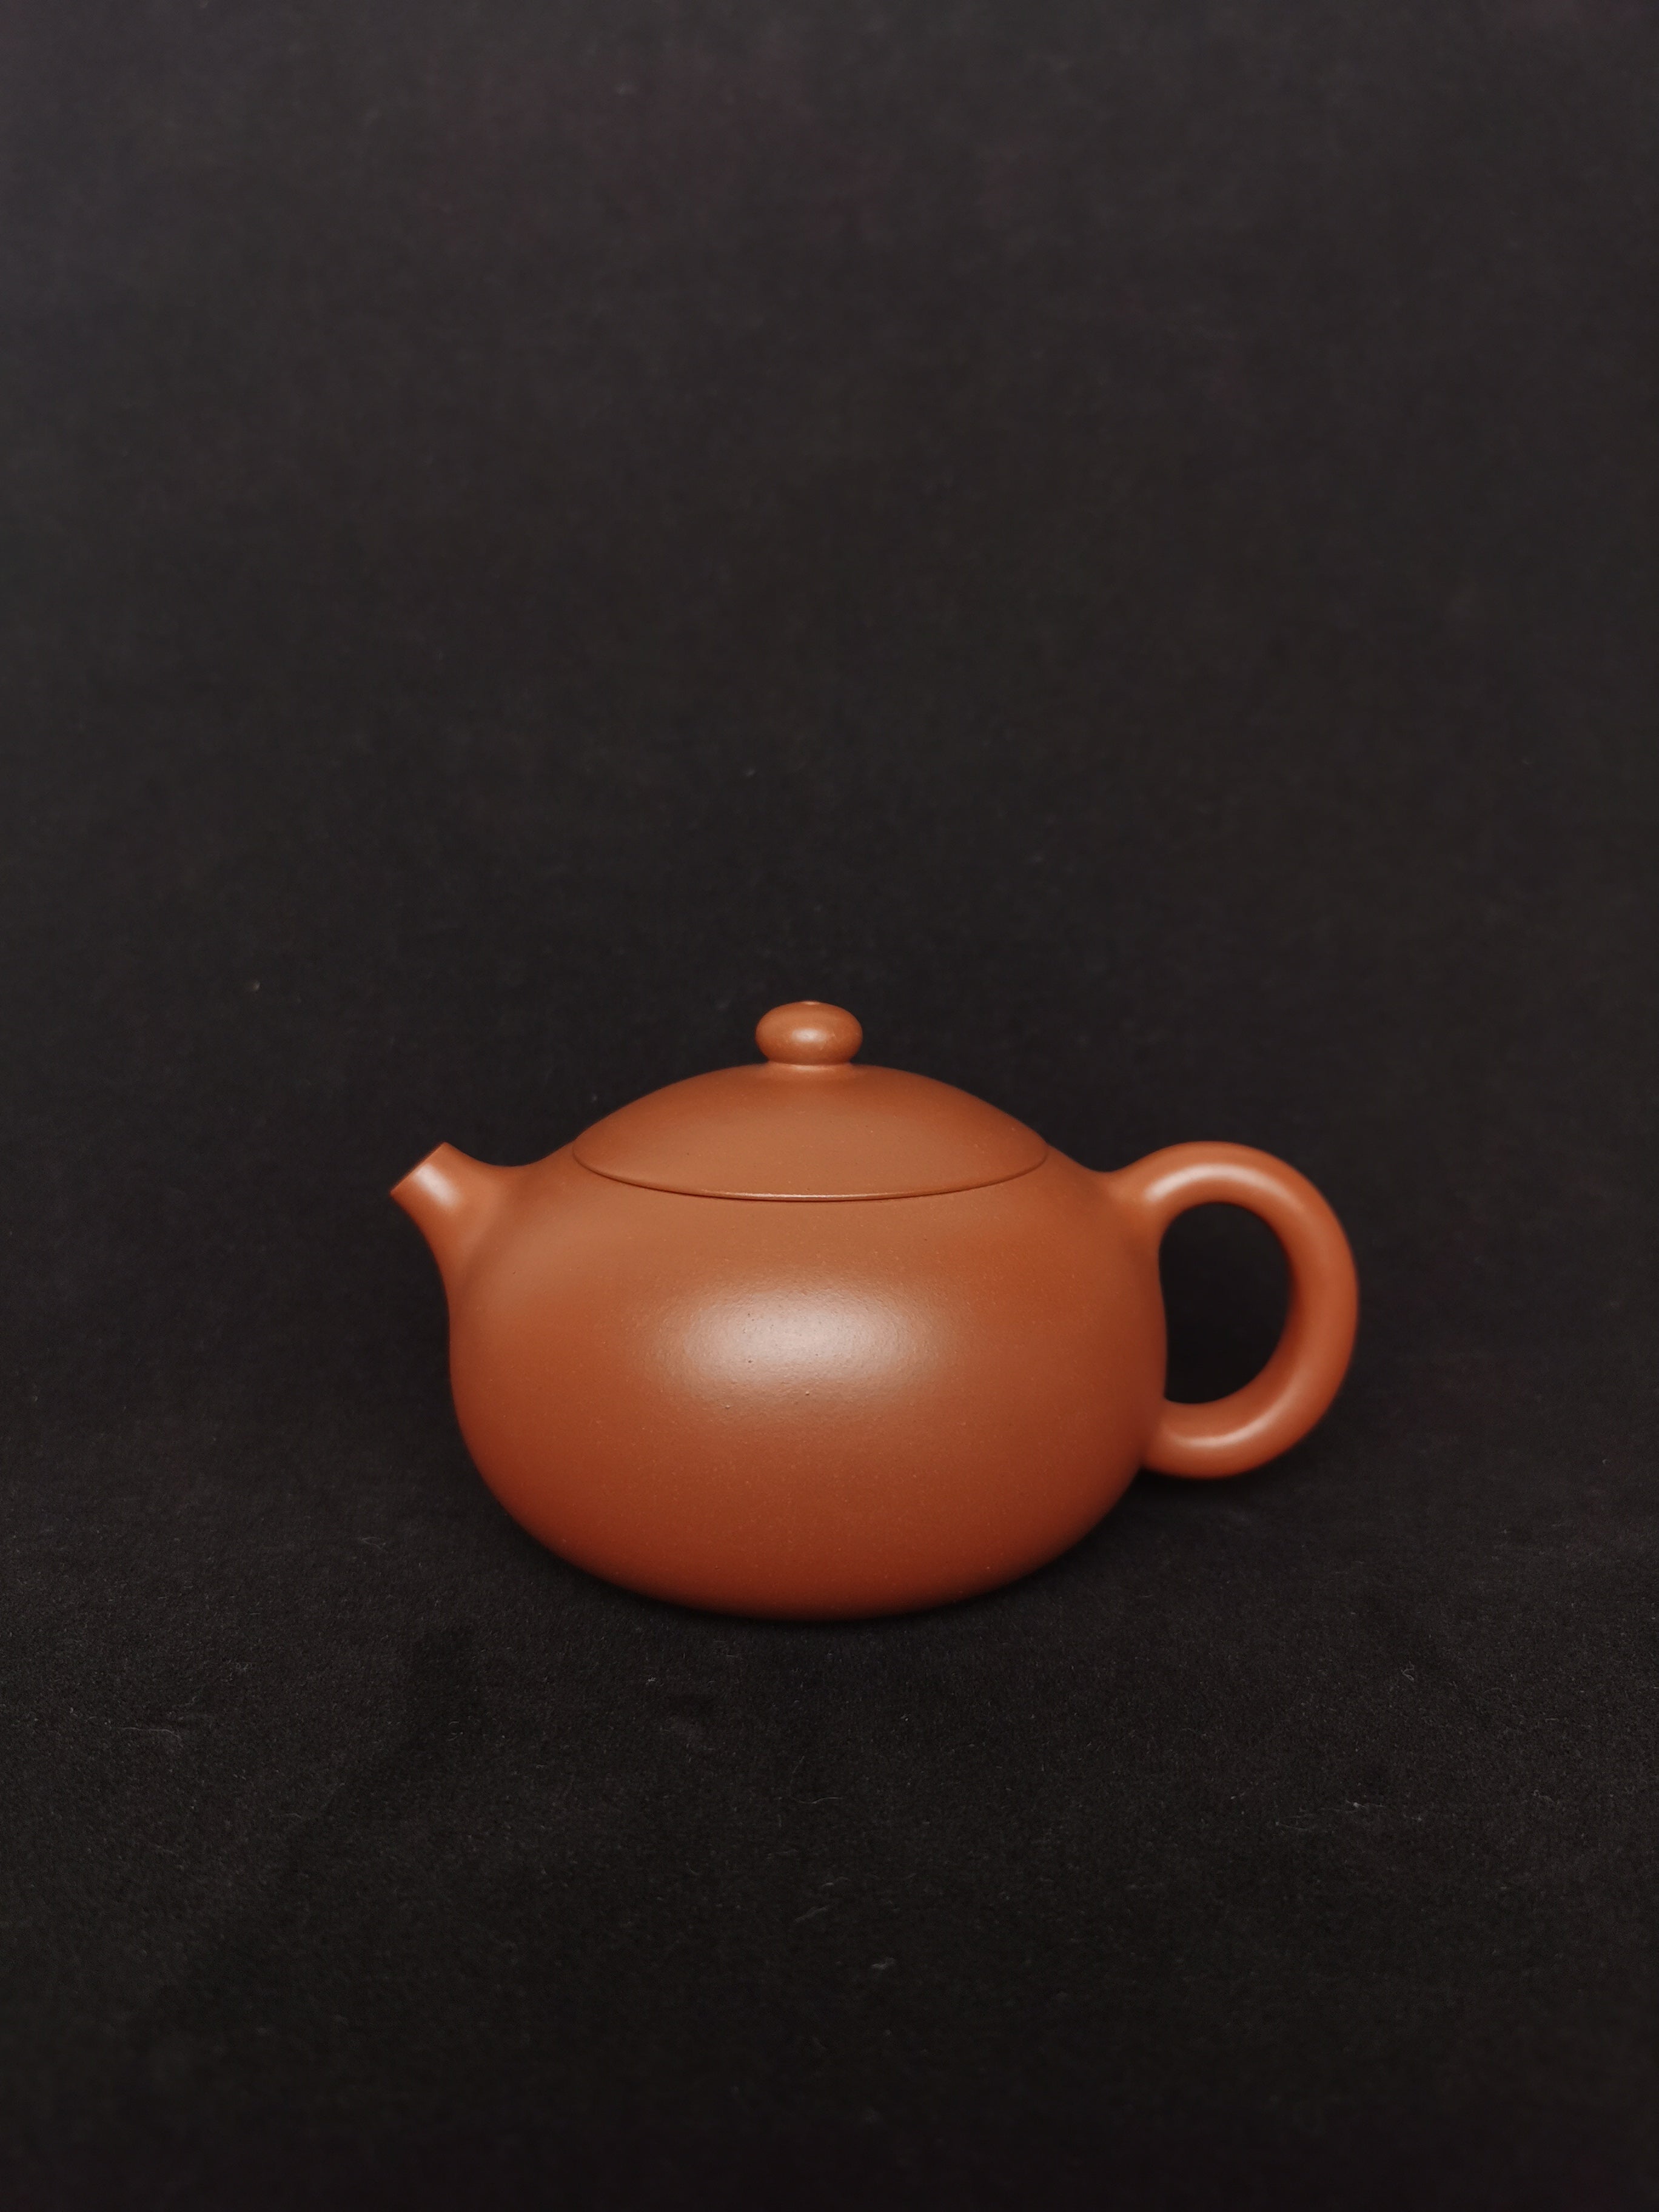 yixing teapot , art collection. ấm trà Yixing, bộ sưu tập nghệ thuật.